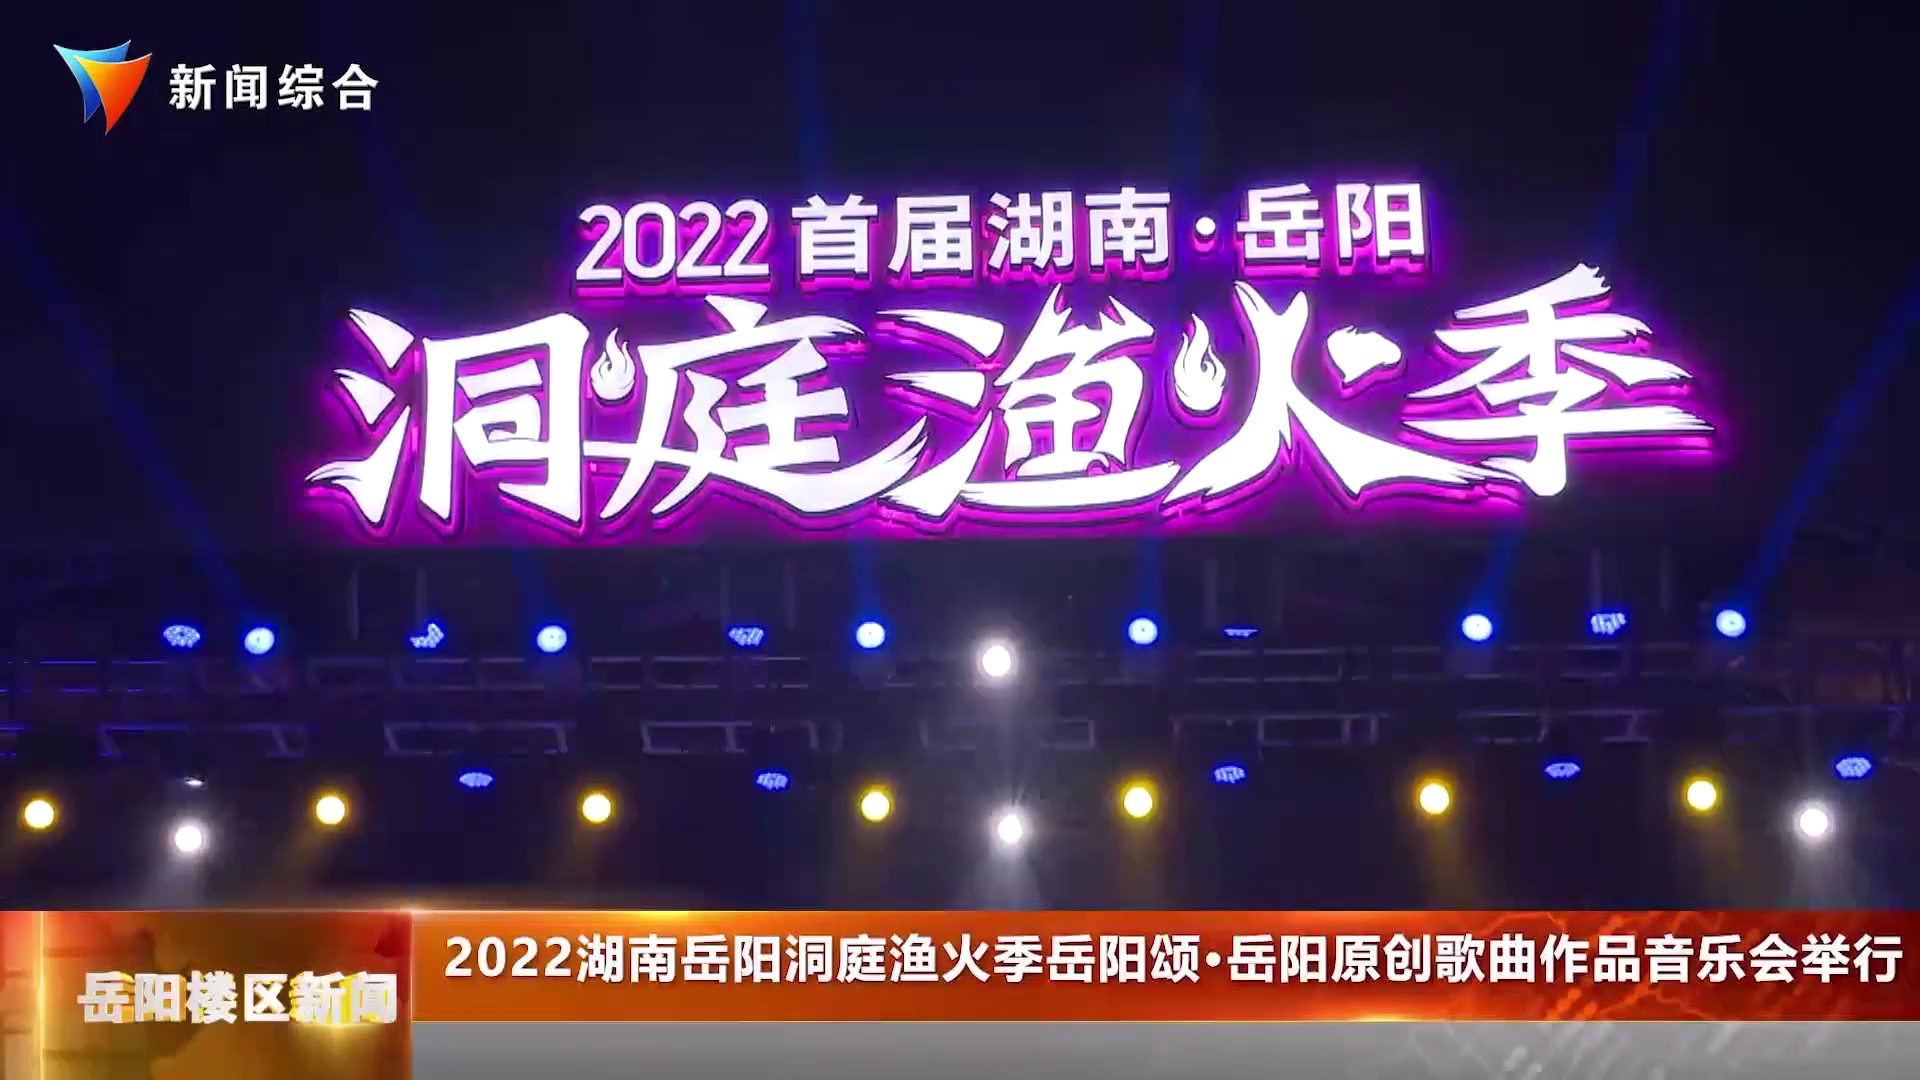 2022湖南岳阳洞庭渔火季岳阳颂 岳阳原创歌曲作品音乐会举行 